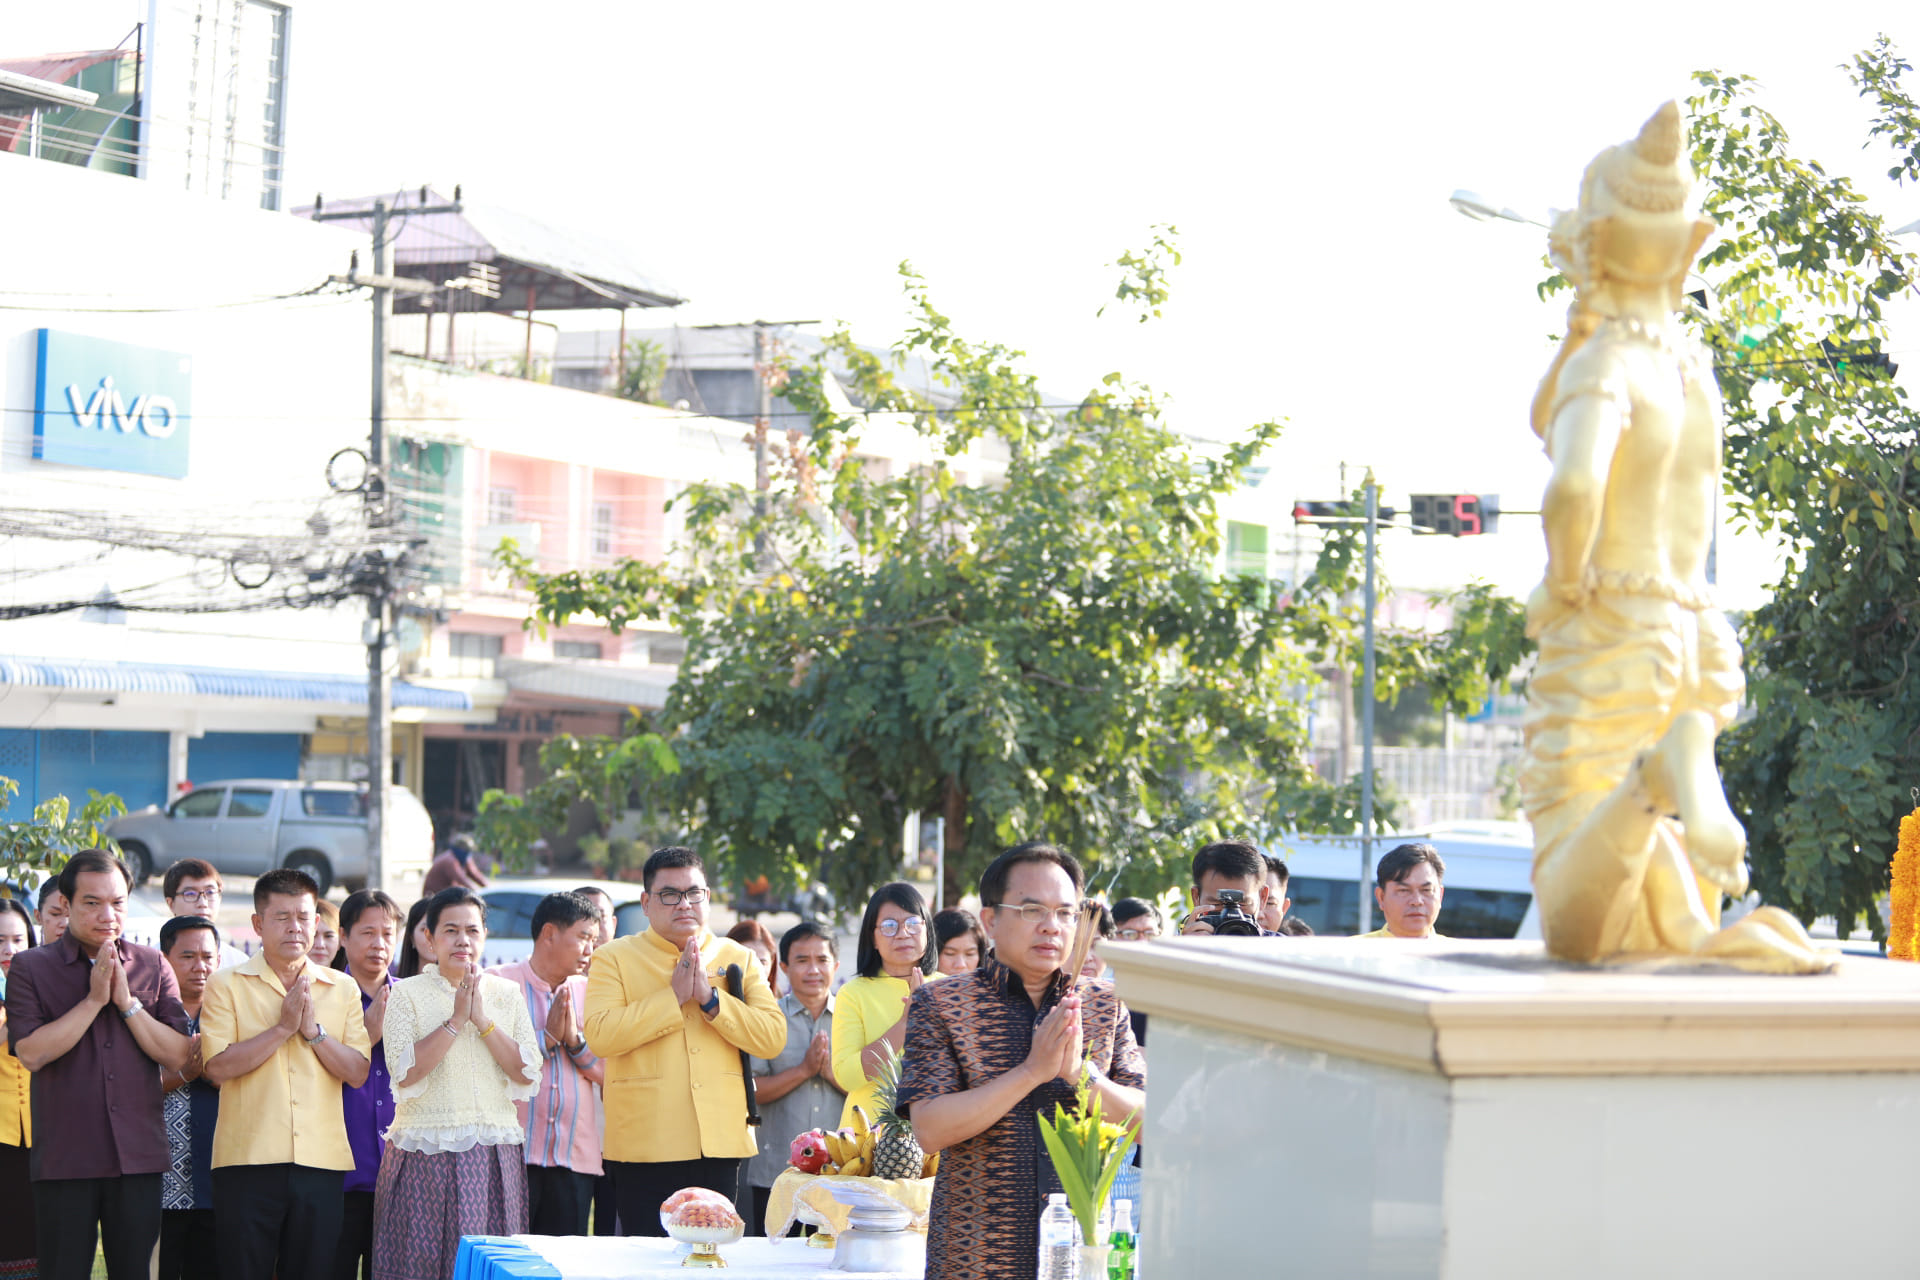 ผู้อำนวยการสำนักประชาสัมพันธ์เขต 1 และผู้บริหาร ข้าราชการสำนักประชาสัมพันธ์เขต 1 สักการะสิ่งศักดิ์สิทธิ์ พระพรหม พระภูมิ และพระอินทร์ณ สถานีวิทยุกระจายเสียงแห่งประเทศไทยจังหวัดขอนแก่น